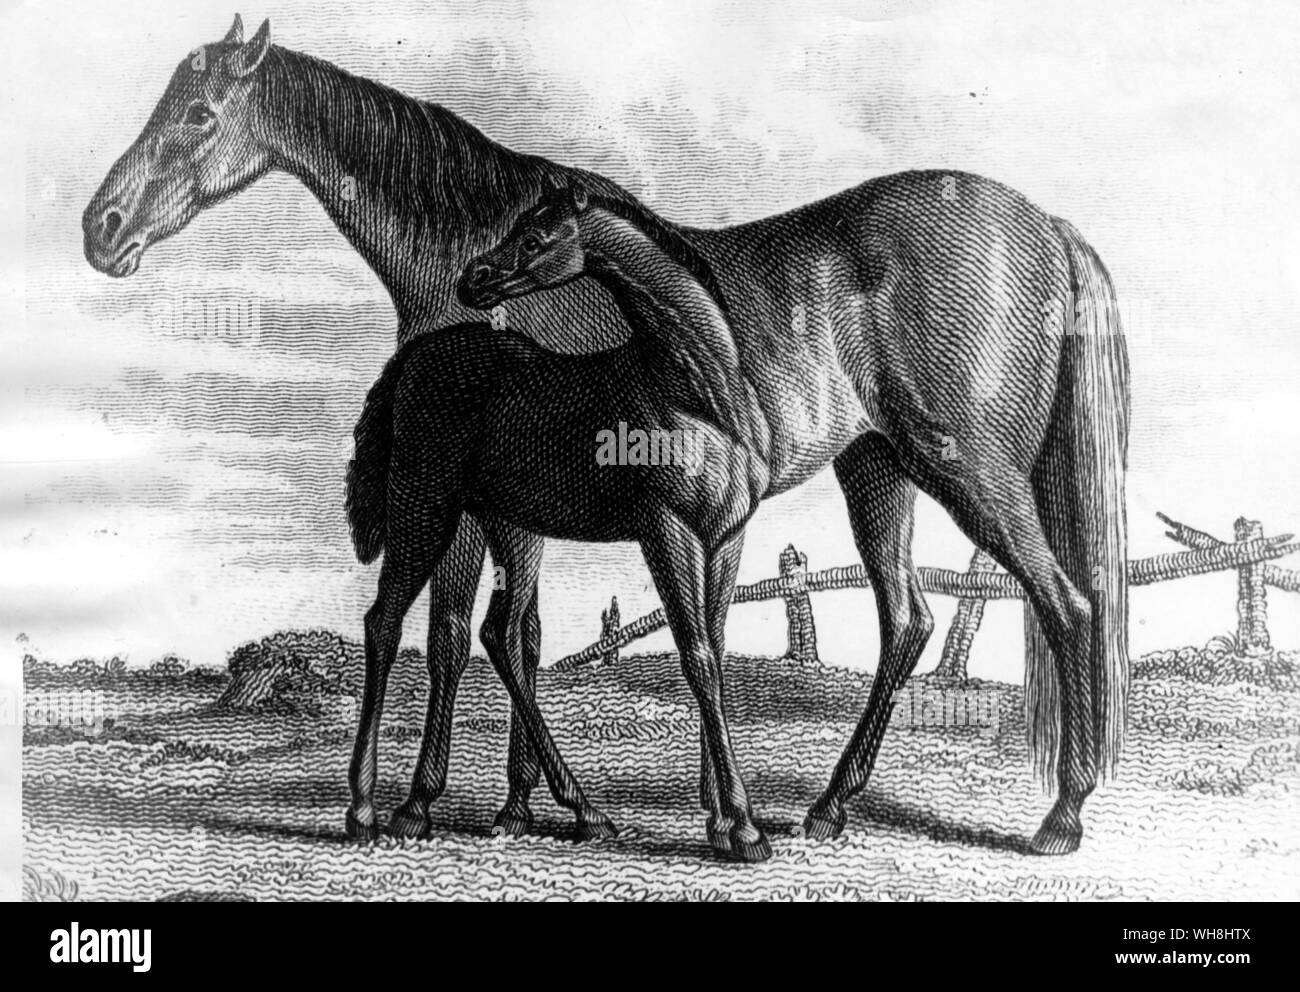 Slamerkin (1769) è stato allevato da James DeLancey II a Bouwerie, importate Wildair (da Machem il sire Cadei) al di fuori di un importate unnamed mare da Cub. Ha vinto quattro anni piastre a Newmarket (S.C.) e Philadelphia nel 1773 prima di andare al prigioniero, dove divenne uno dei più influenti fattrici i nella storia americana. Il suo sire è stata riacquistata dal suo allevatore Edward Leedes nel 1773. La storia delle corse di cavalli da Roger Longrigg, pagina 110-111. Foto Stock